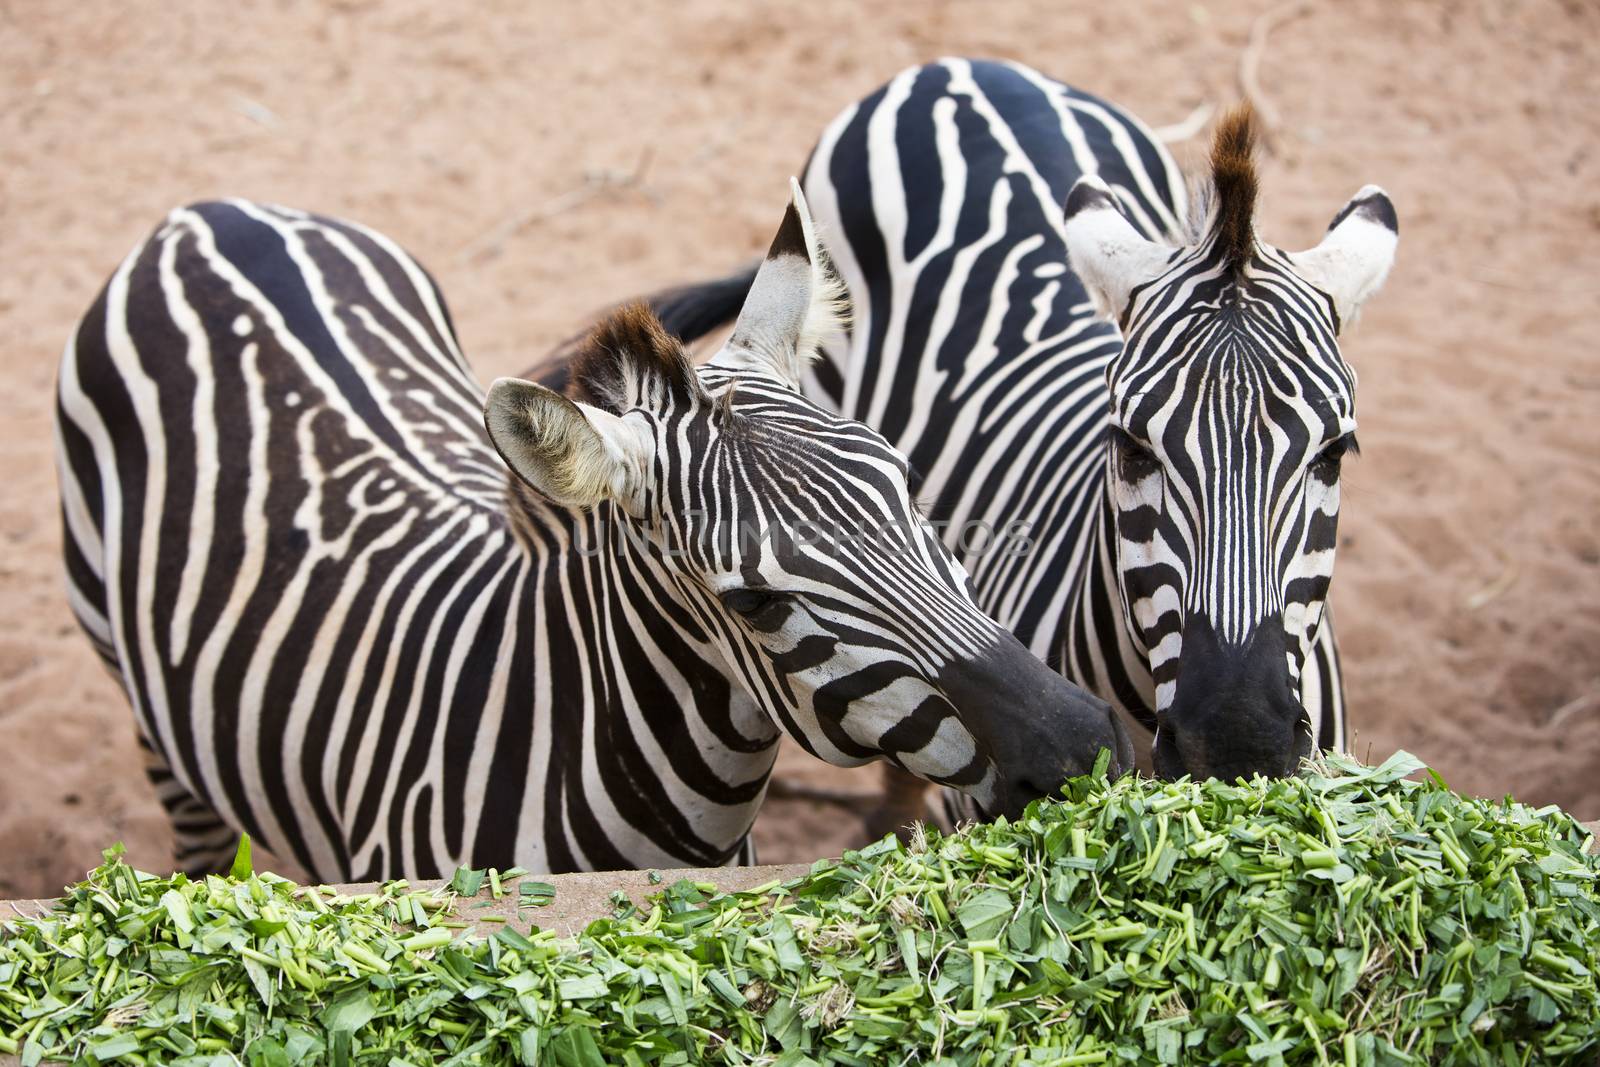 Zebra eating morning glory. by jayzynism